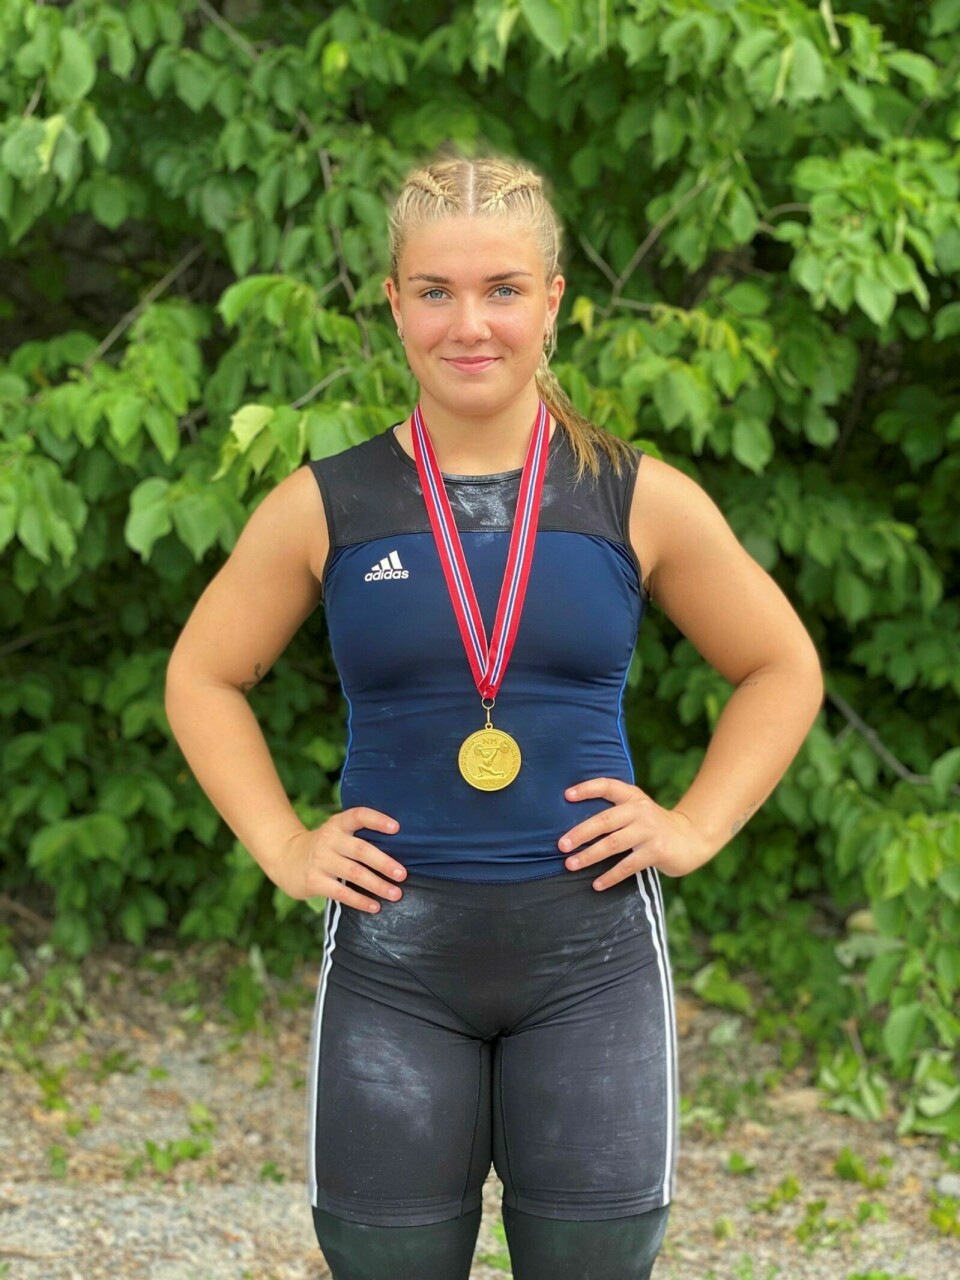 GULLJENTE: Lea Berle Horne fra Storsteinnes vant torsdag tre gull i senior-NM i vektløfting og satte like mange både norske og nordiske rekorder under mesterskapet i Skien. Foto: Privat